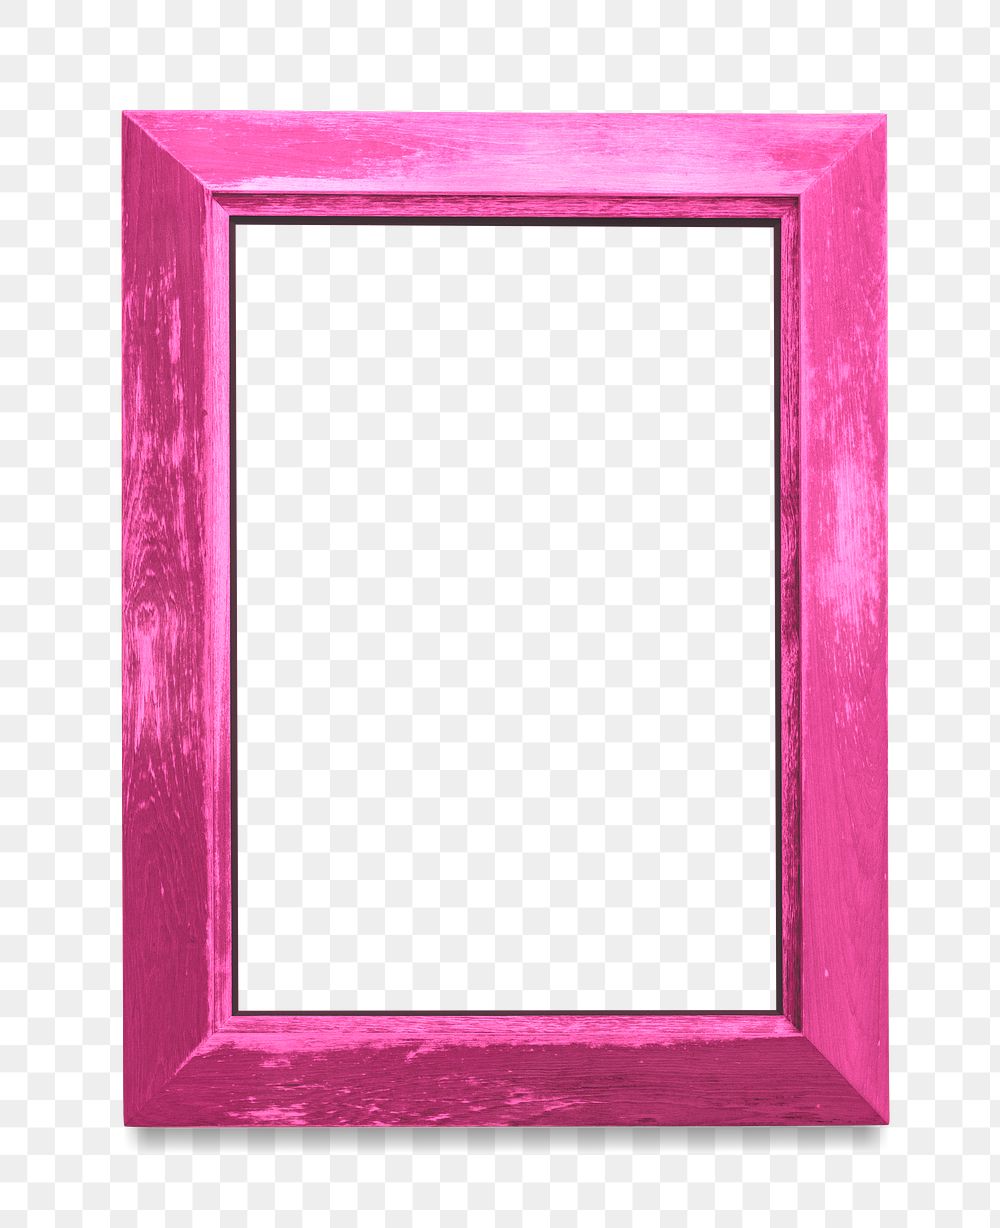 Pink photo frame mockup